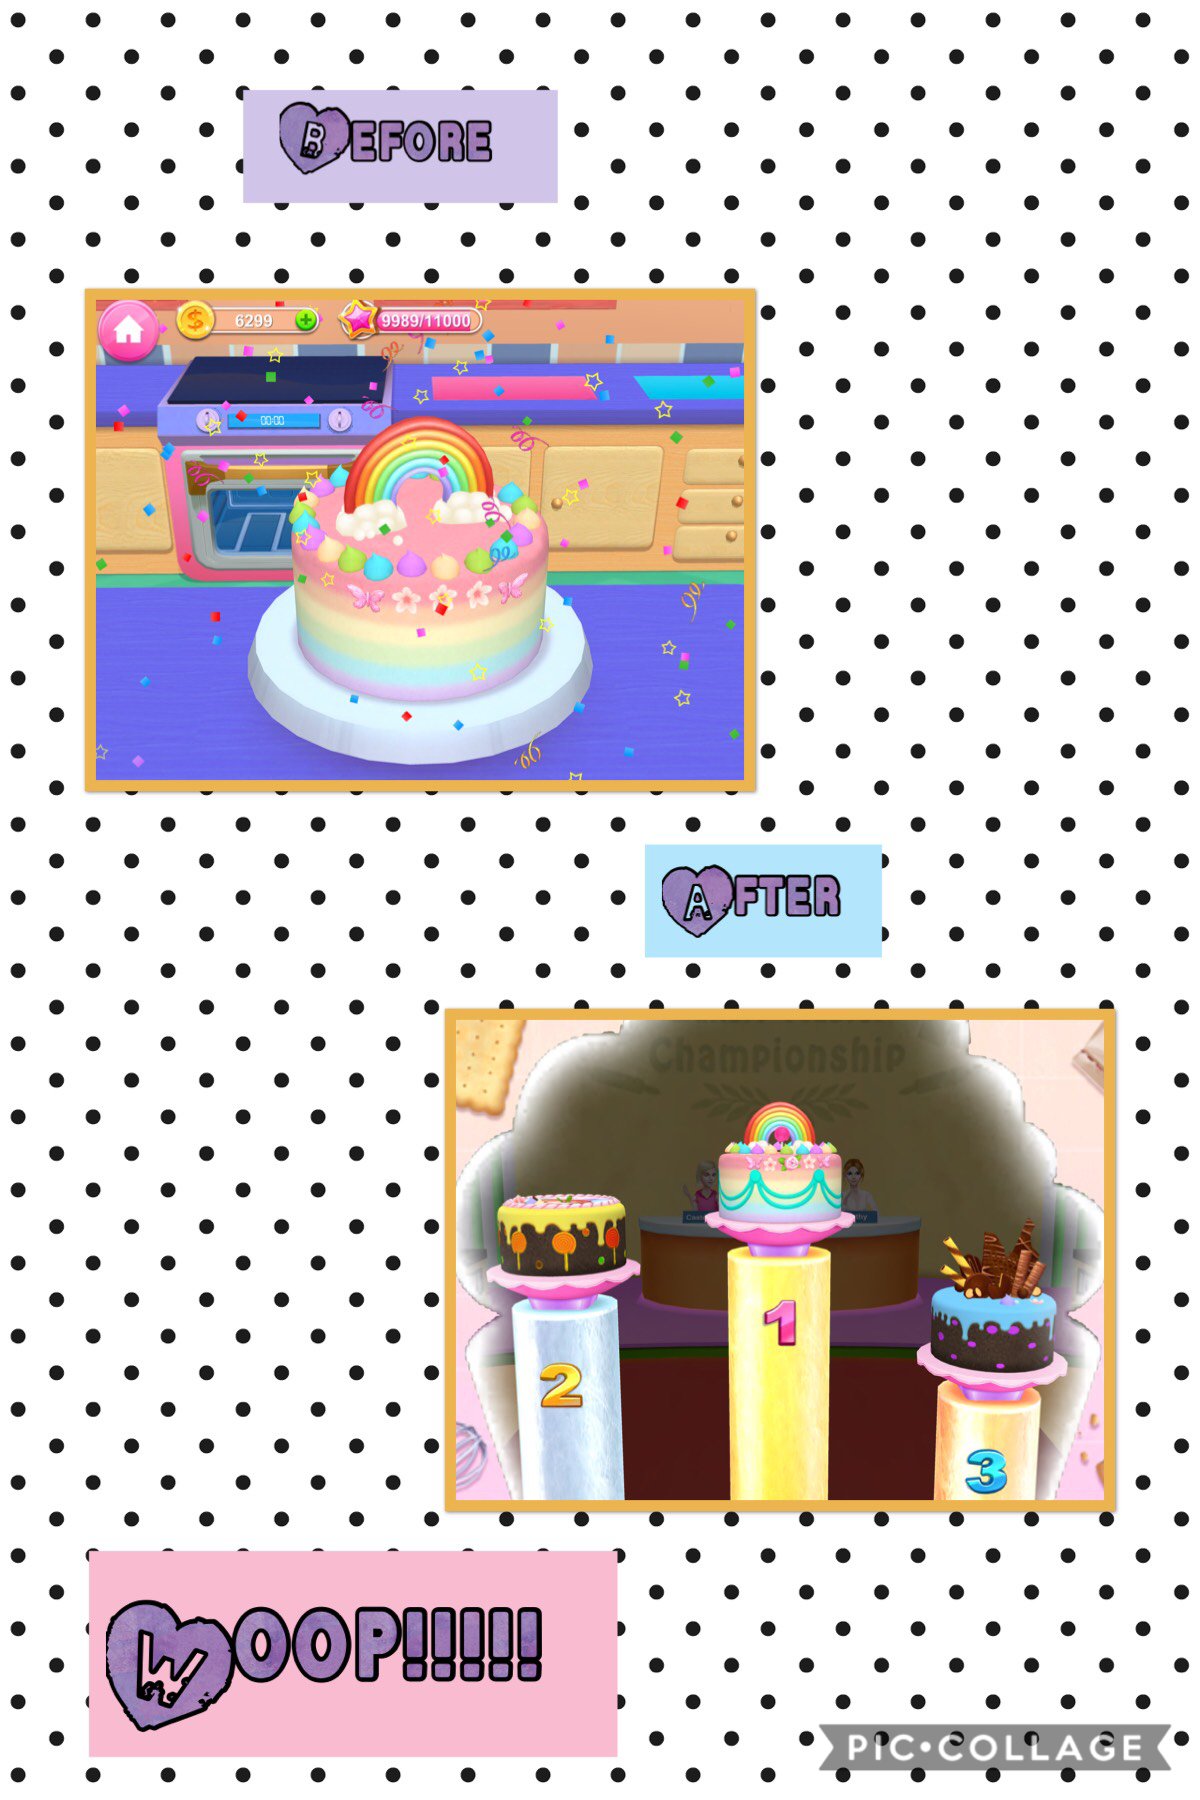 I won the cake on Bakery Empire!